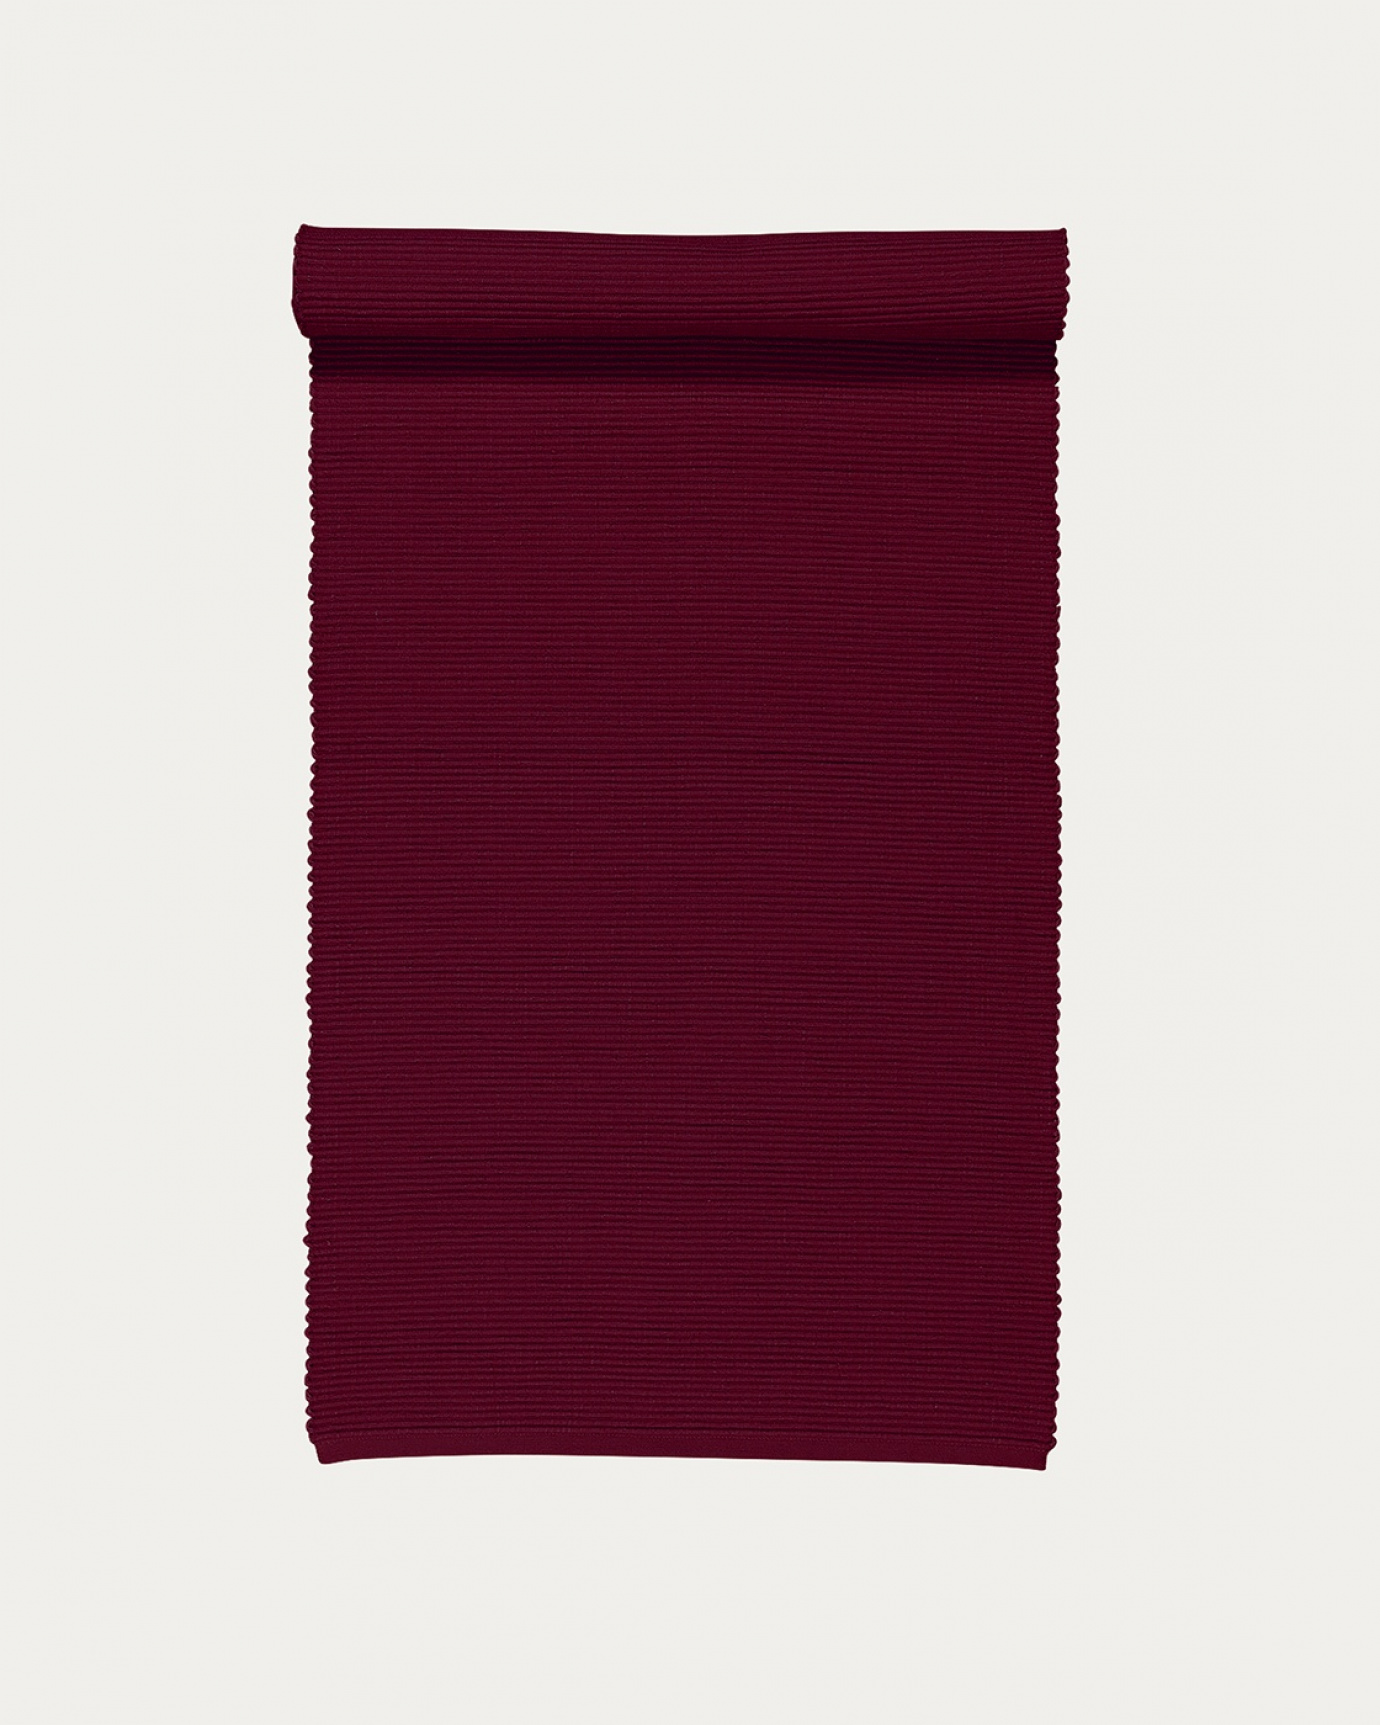 Produktbild burgunderrot UNI Tischläufer aus weicher Baumwolle in Rippenqualität von LINUM DESIGN. Größe 45x150 cm.